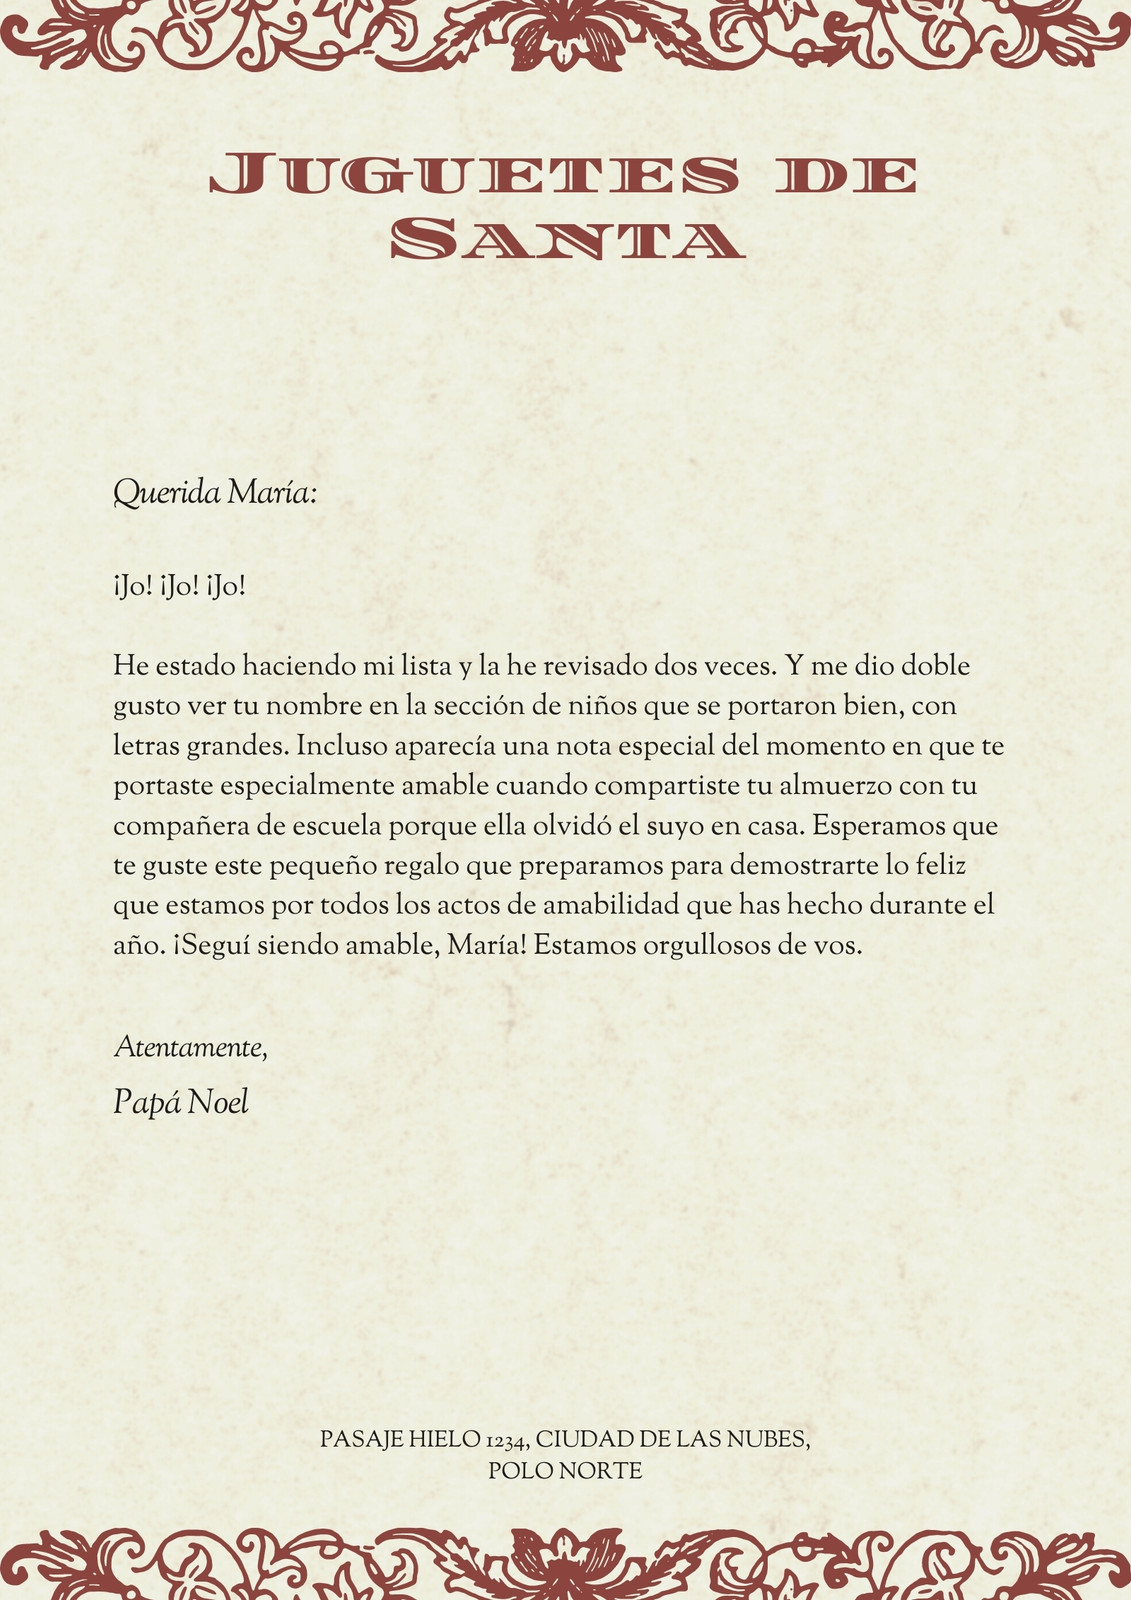 Marón y Gris Floral Vintage Carta a Papá Noel